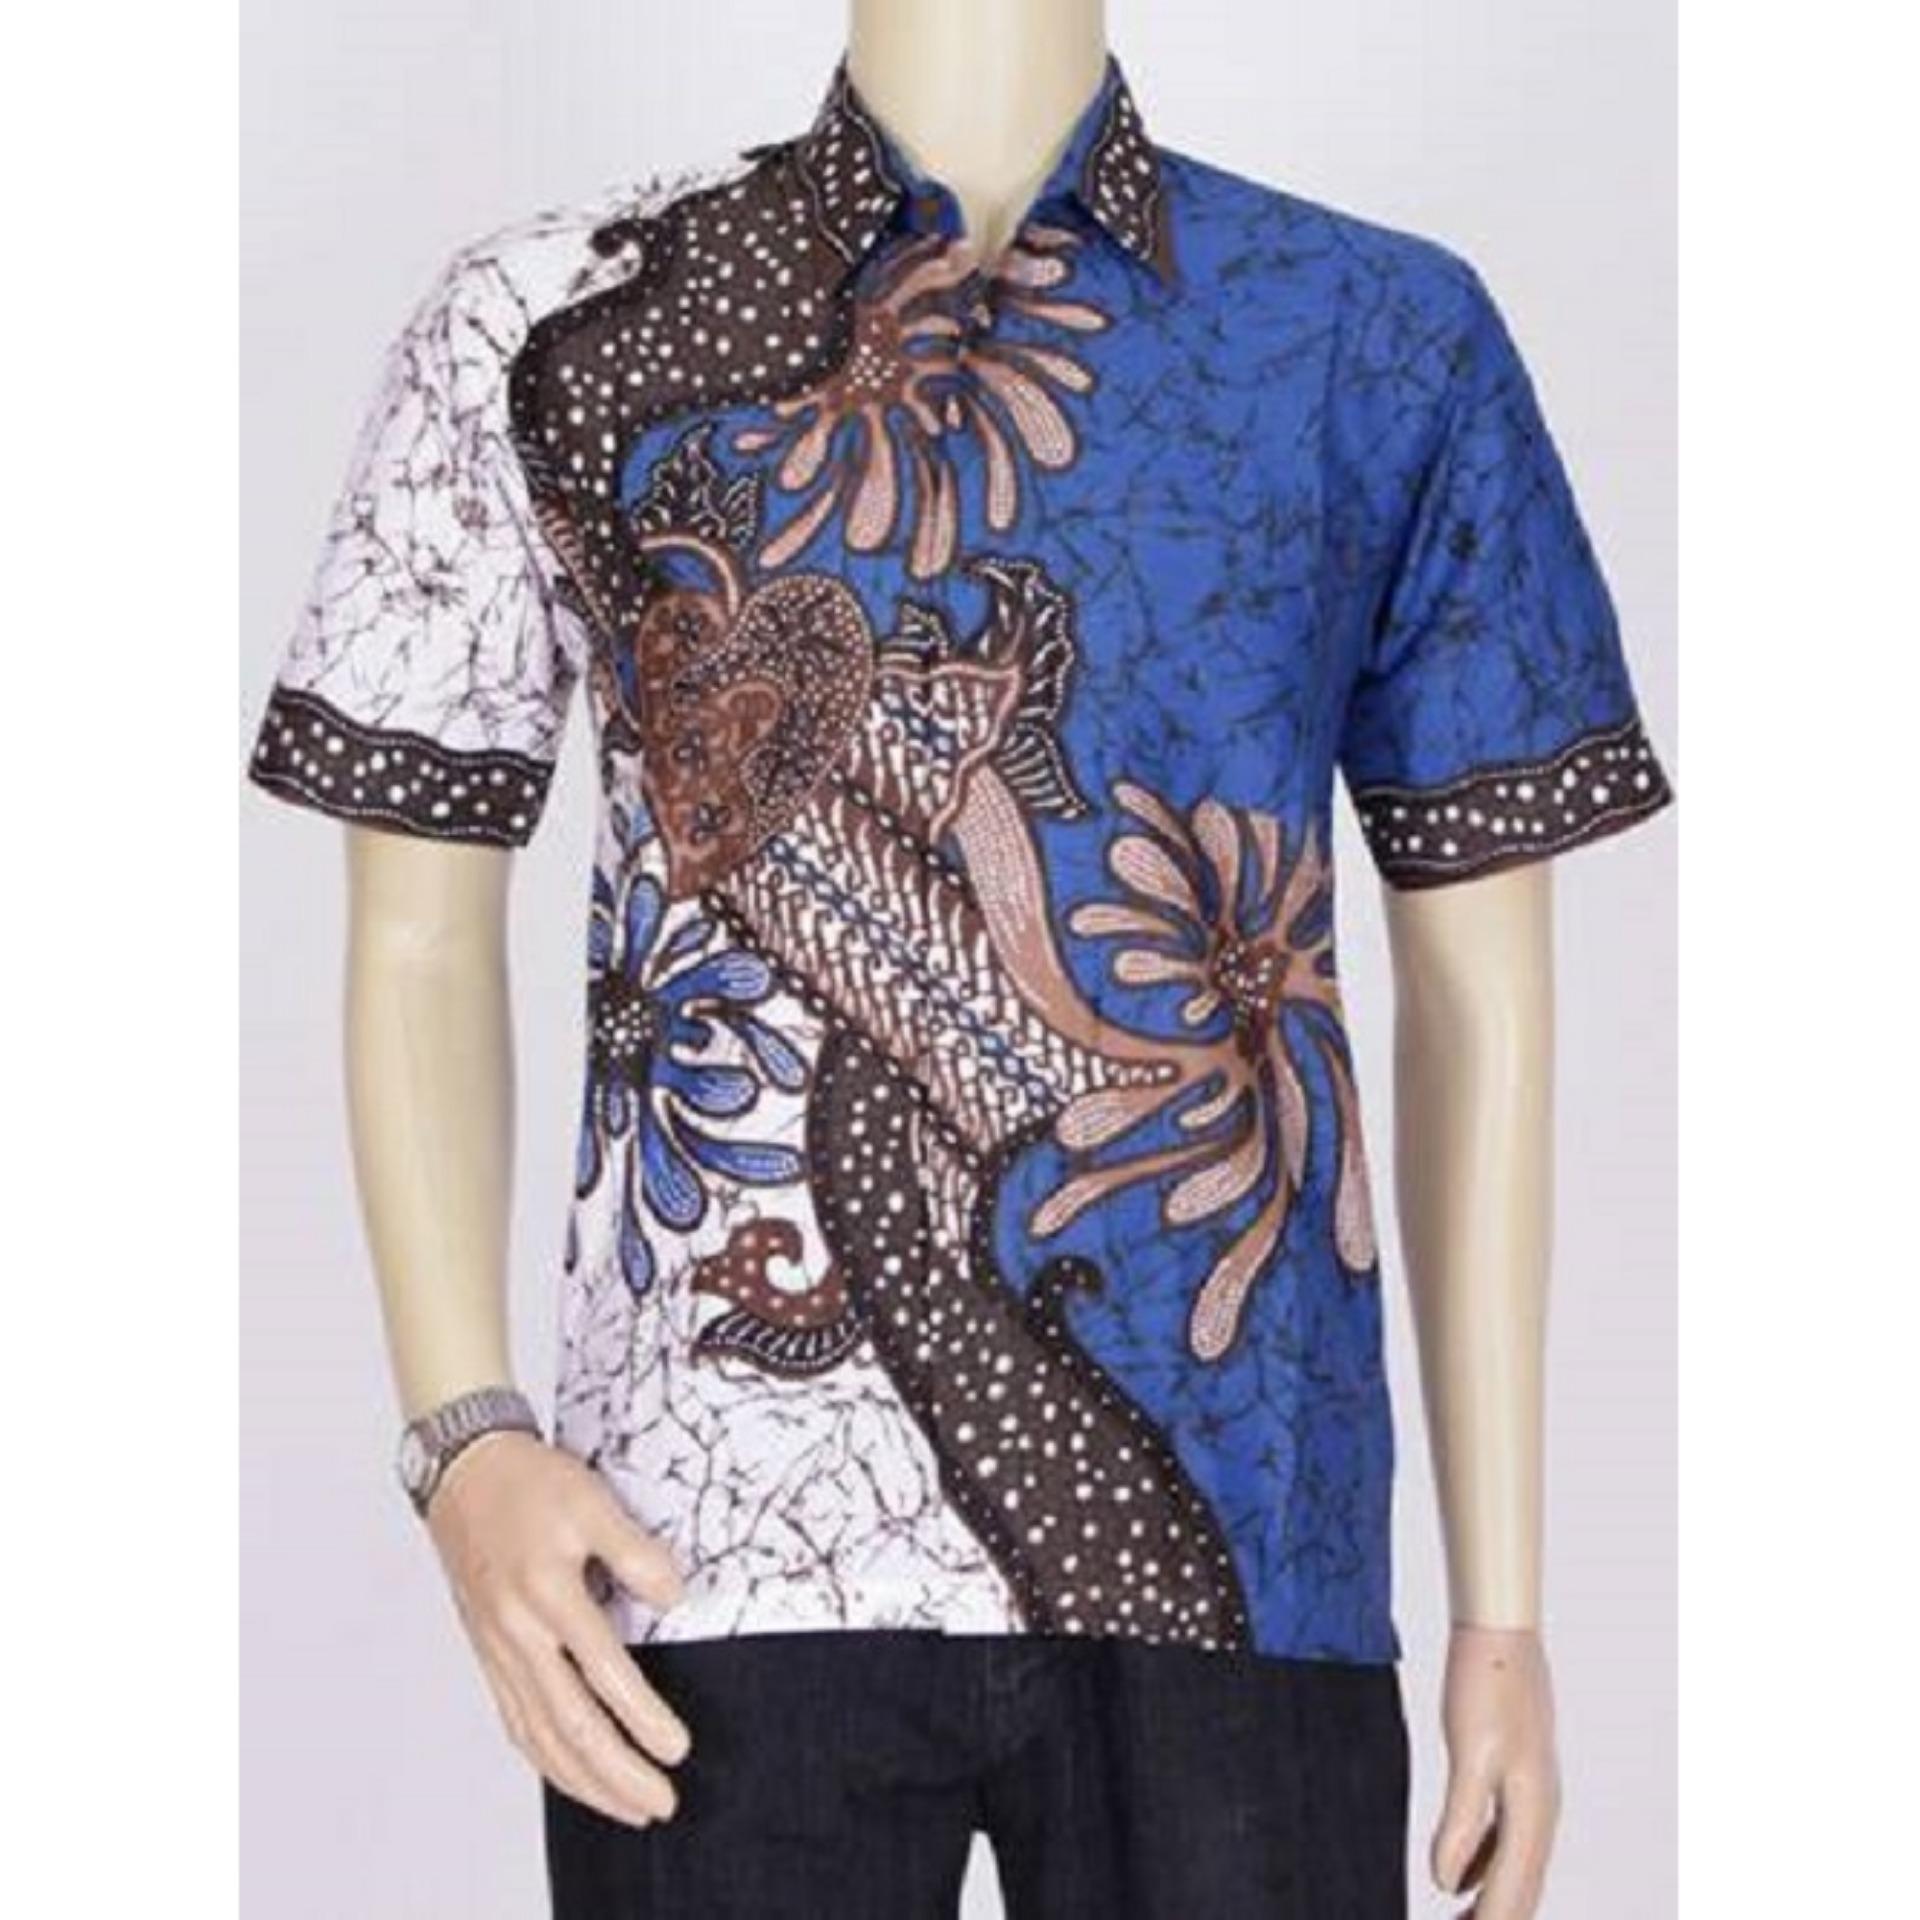 Baju Kemeja Batik - Homecare24